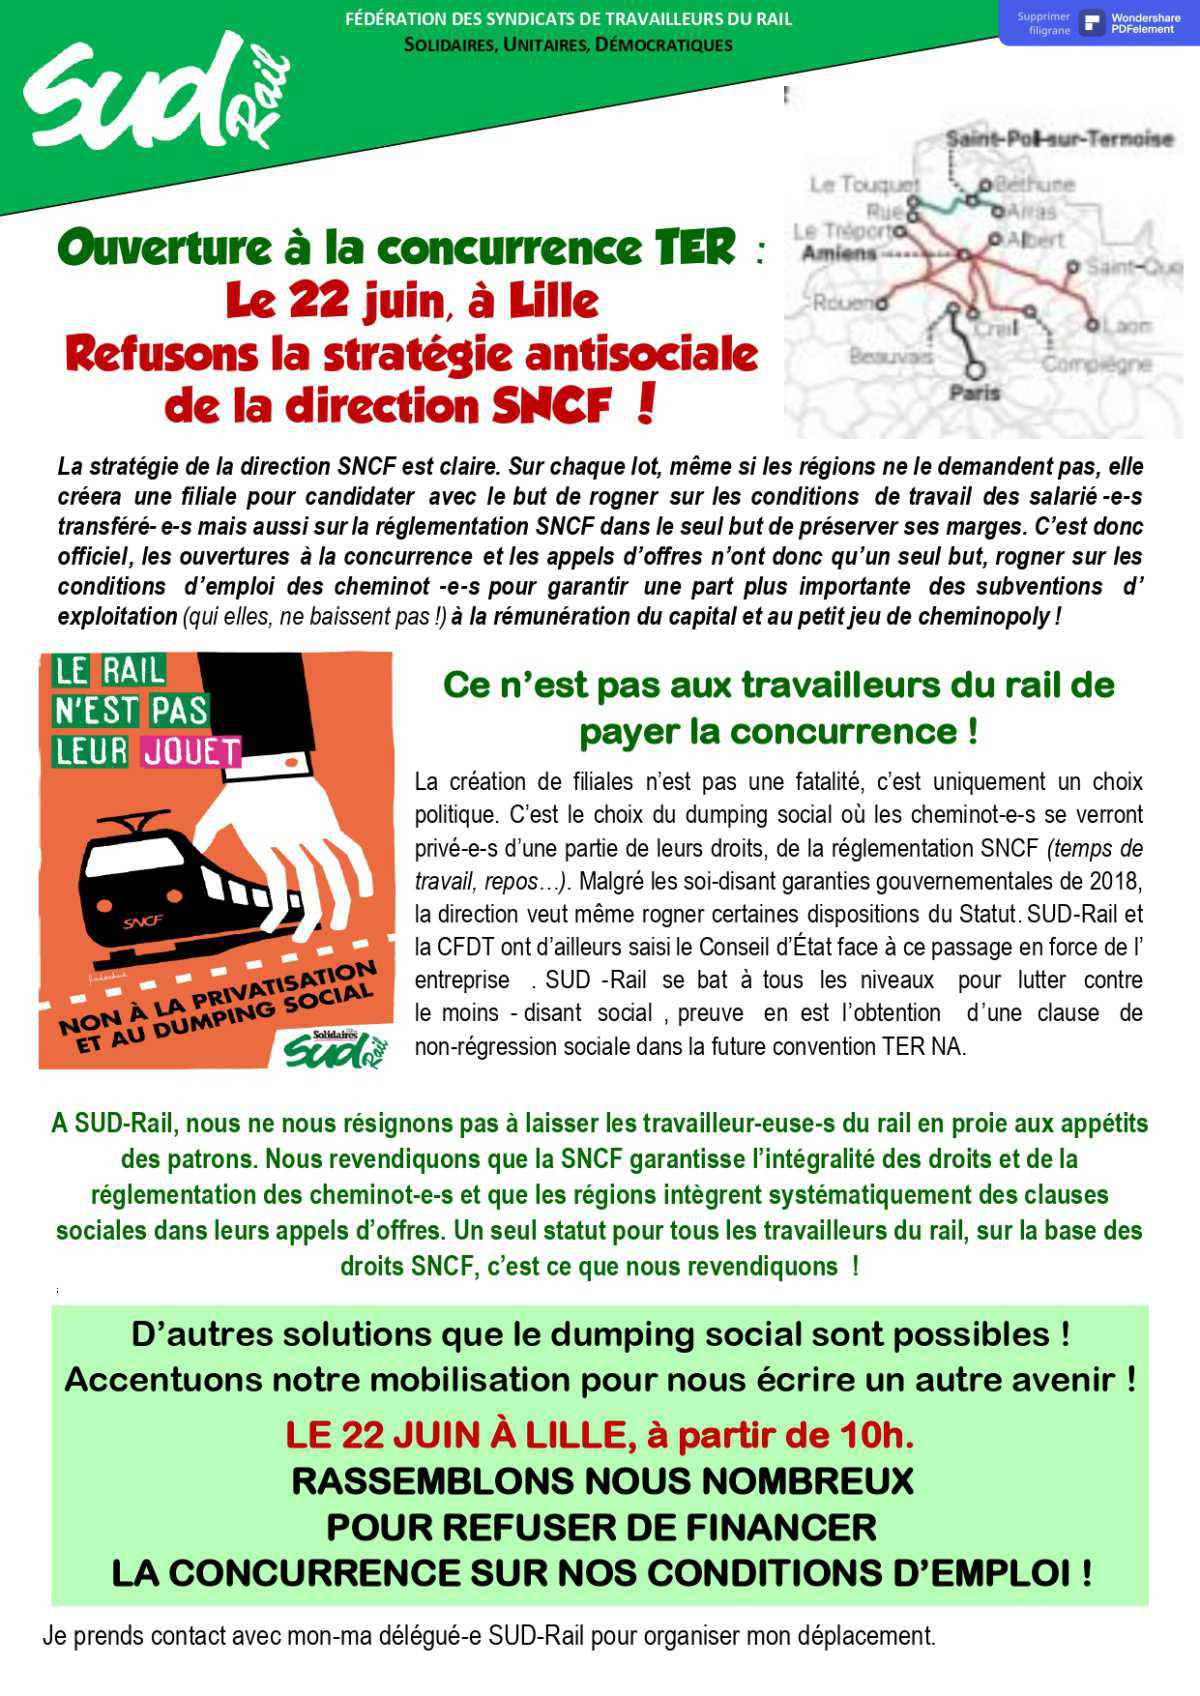 Le 22 juin, à Lille, refusons la stratégie antisociale de la direction SNCF !